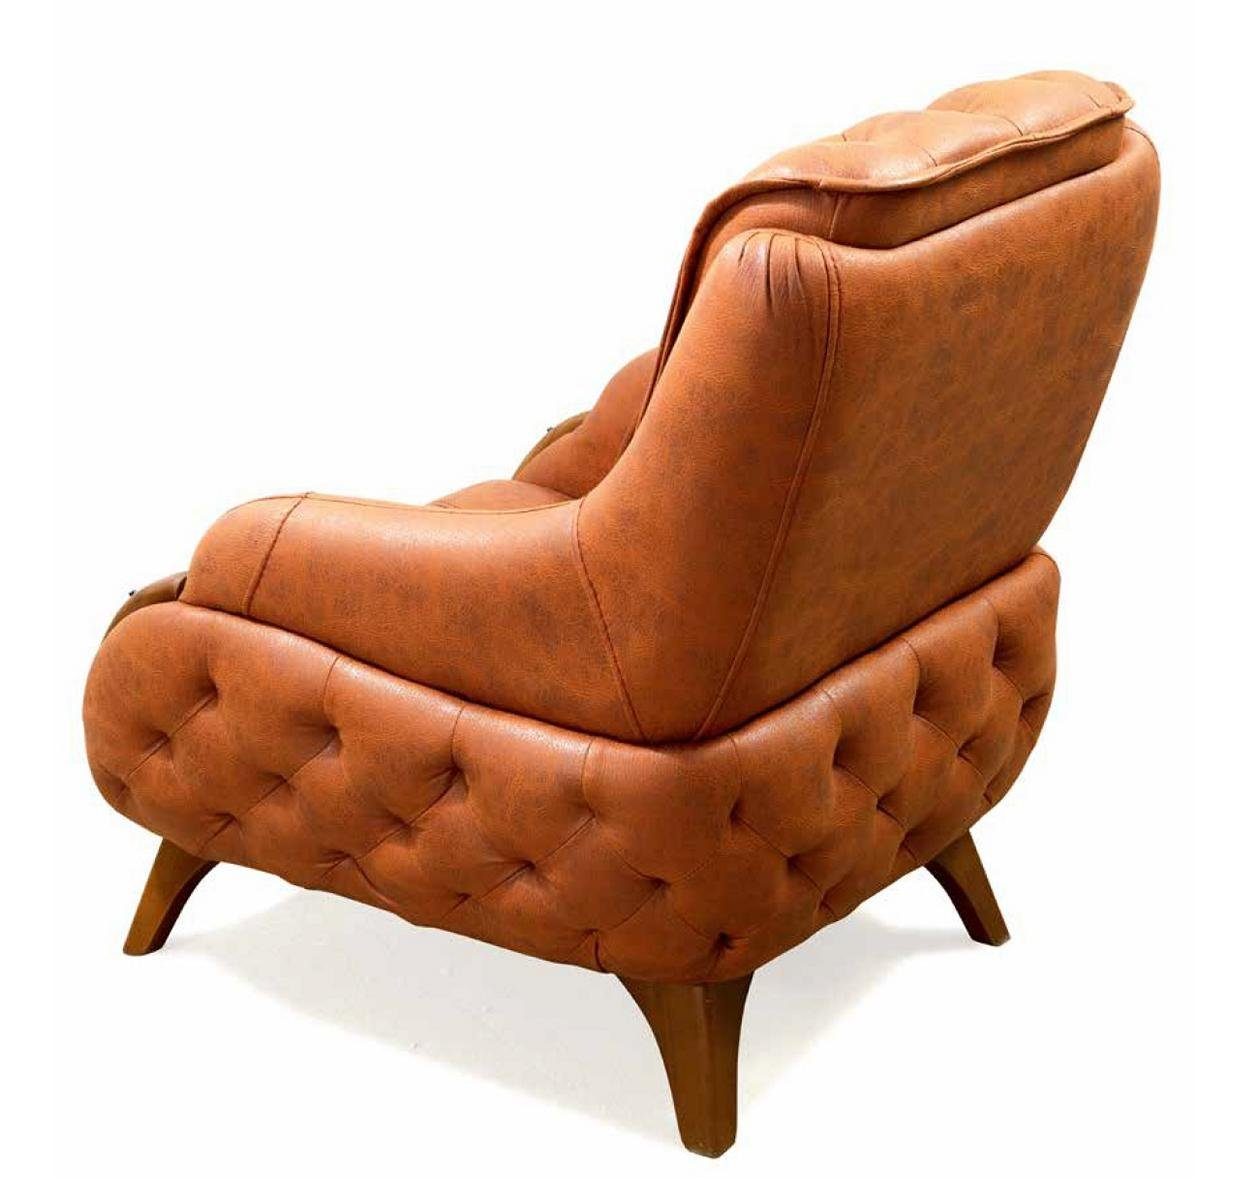 Modern Sessel Relax Luxus Polster JVmoebel Einsitzer Sessel Sitz Leder Stil Design